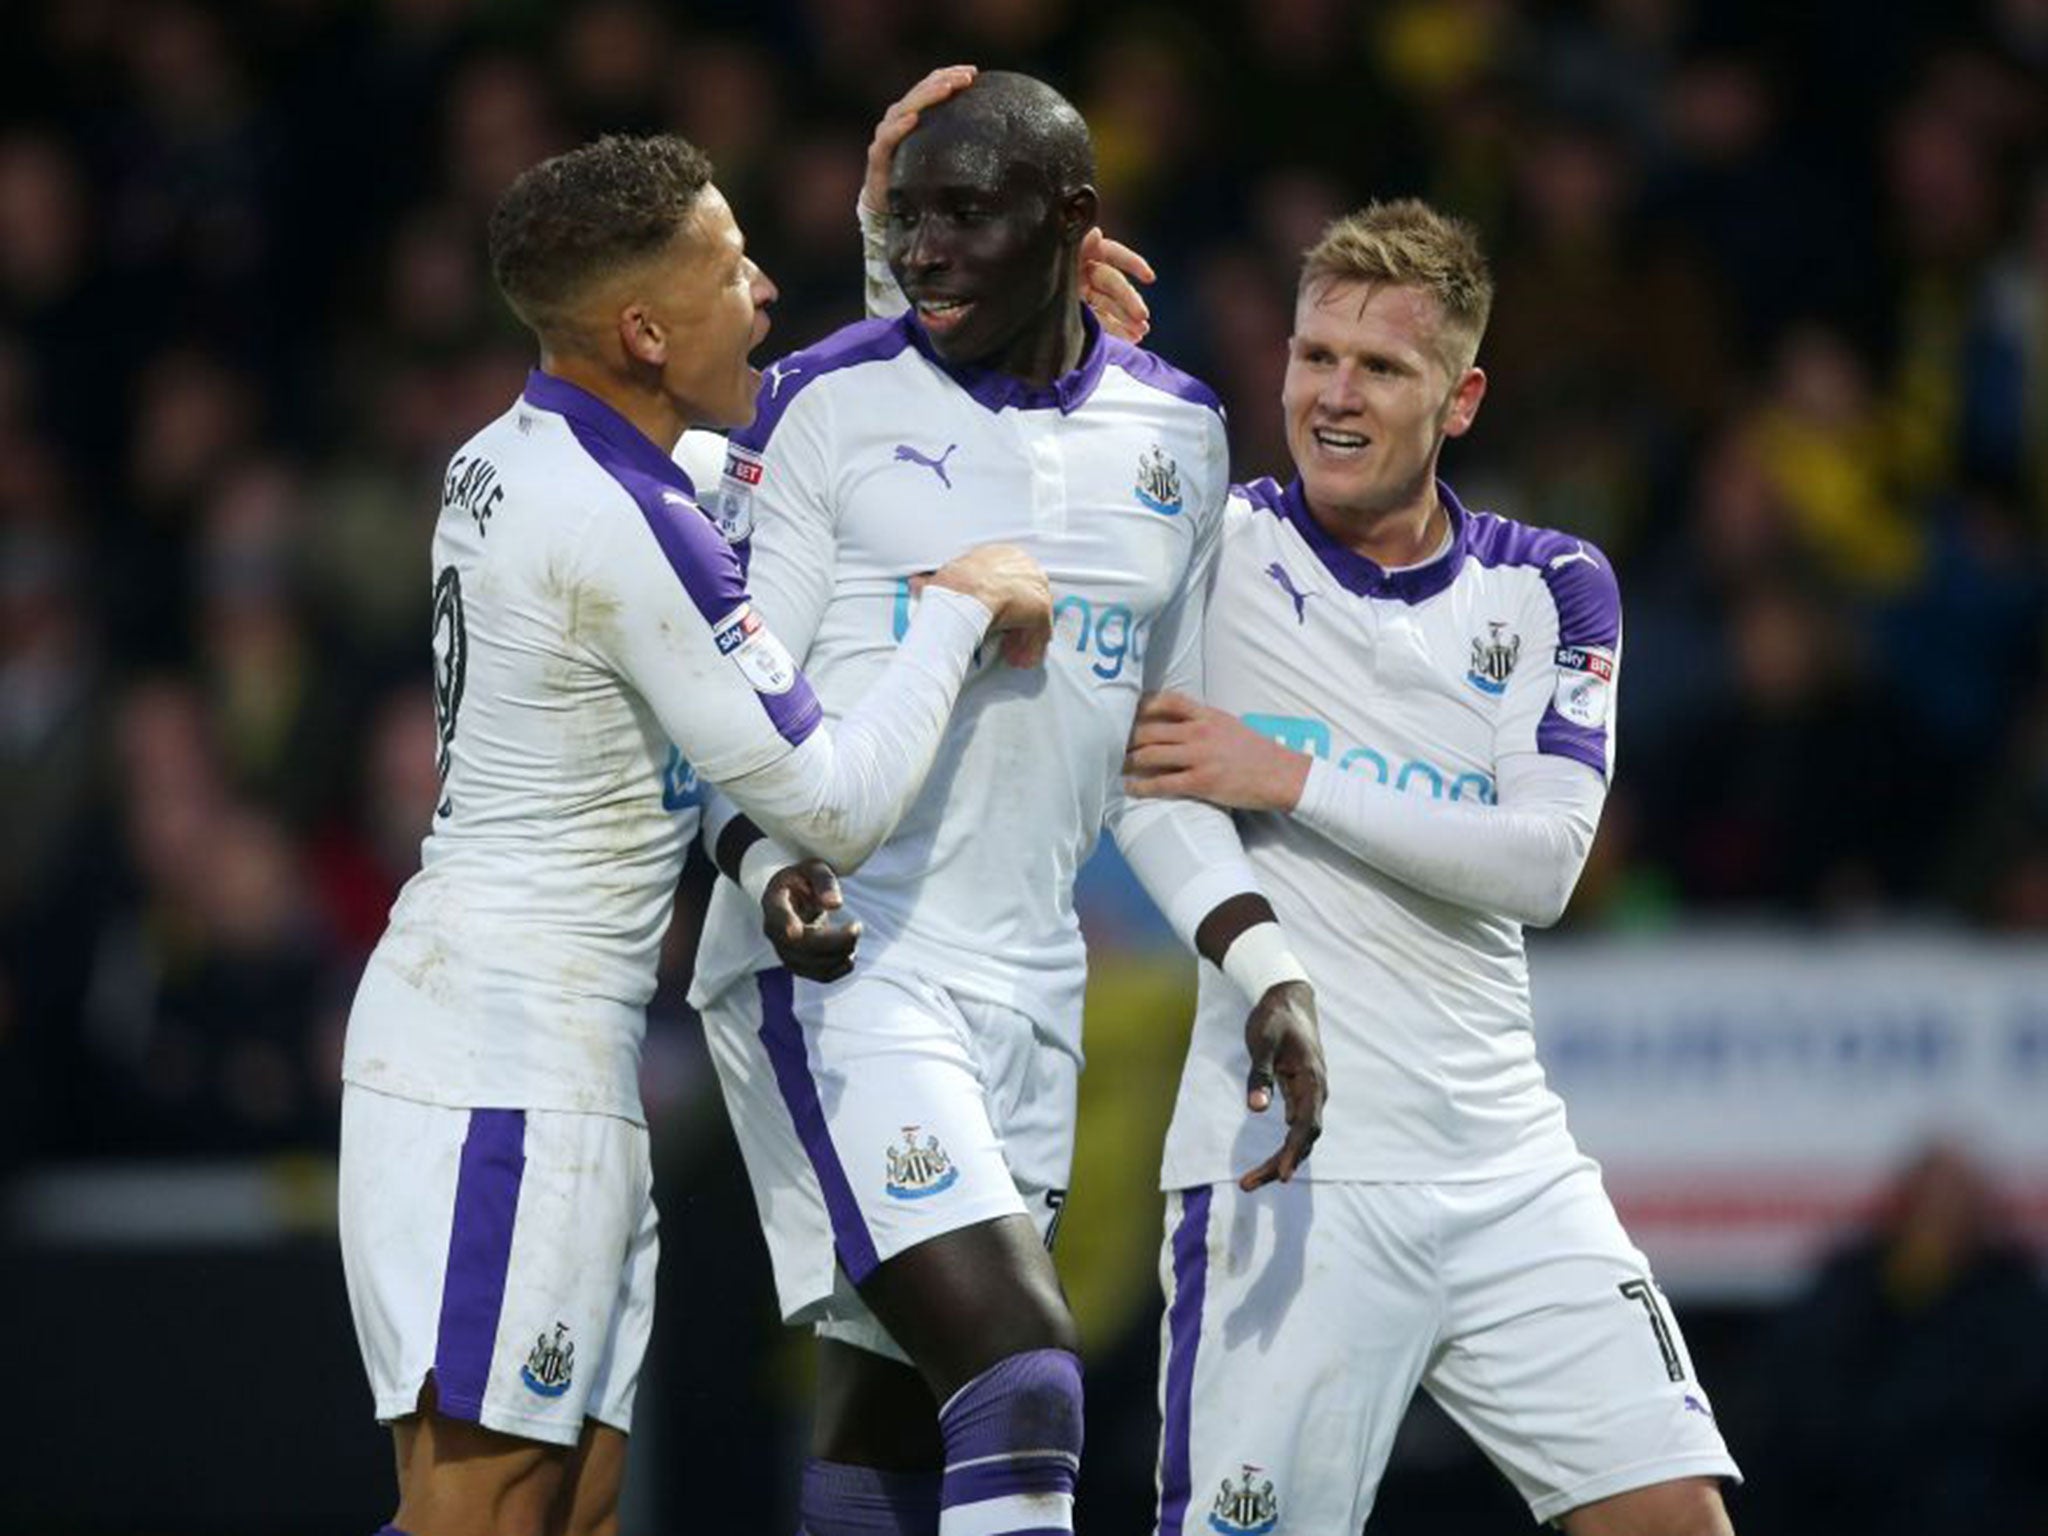 Mohamed Diame celebrates scoring the winning goal for Newcastle